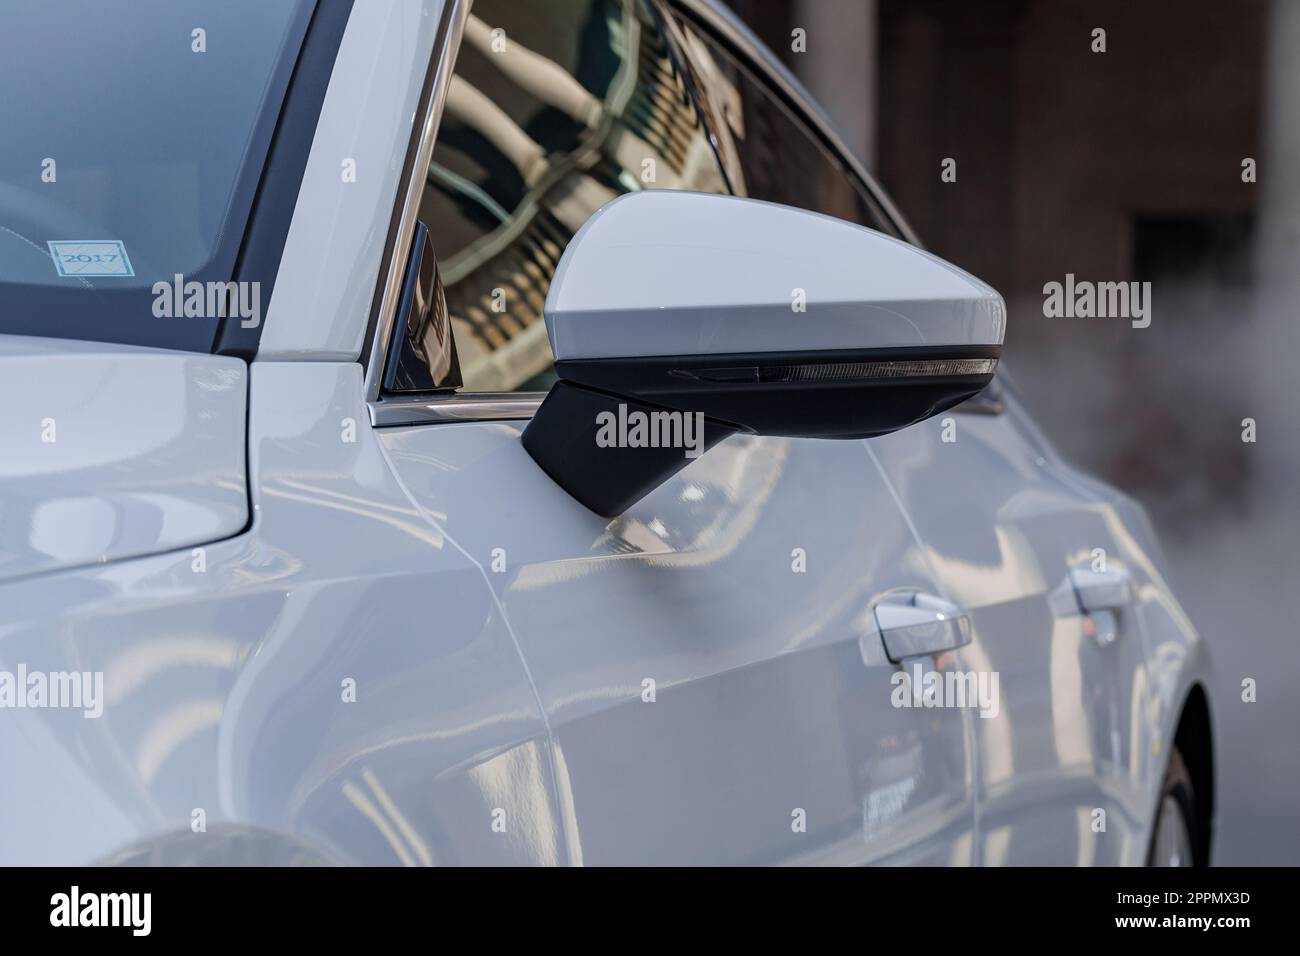 MILAN, ITALIE - AVRIL 16 2018 : Audi City LAB. Vue rapprochée du panneau latéral brillant d'une Audi et du rétroviseur. Banque D'Images